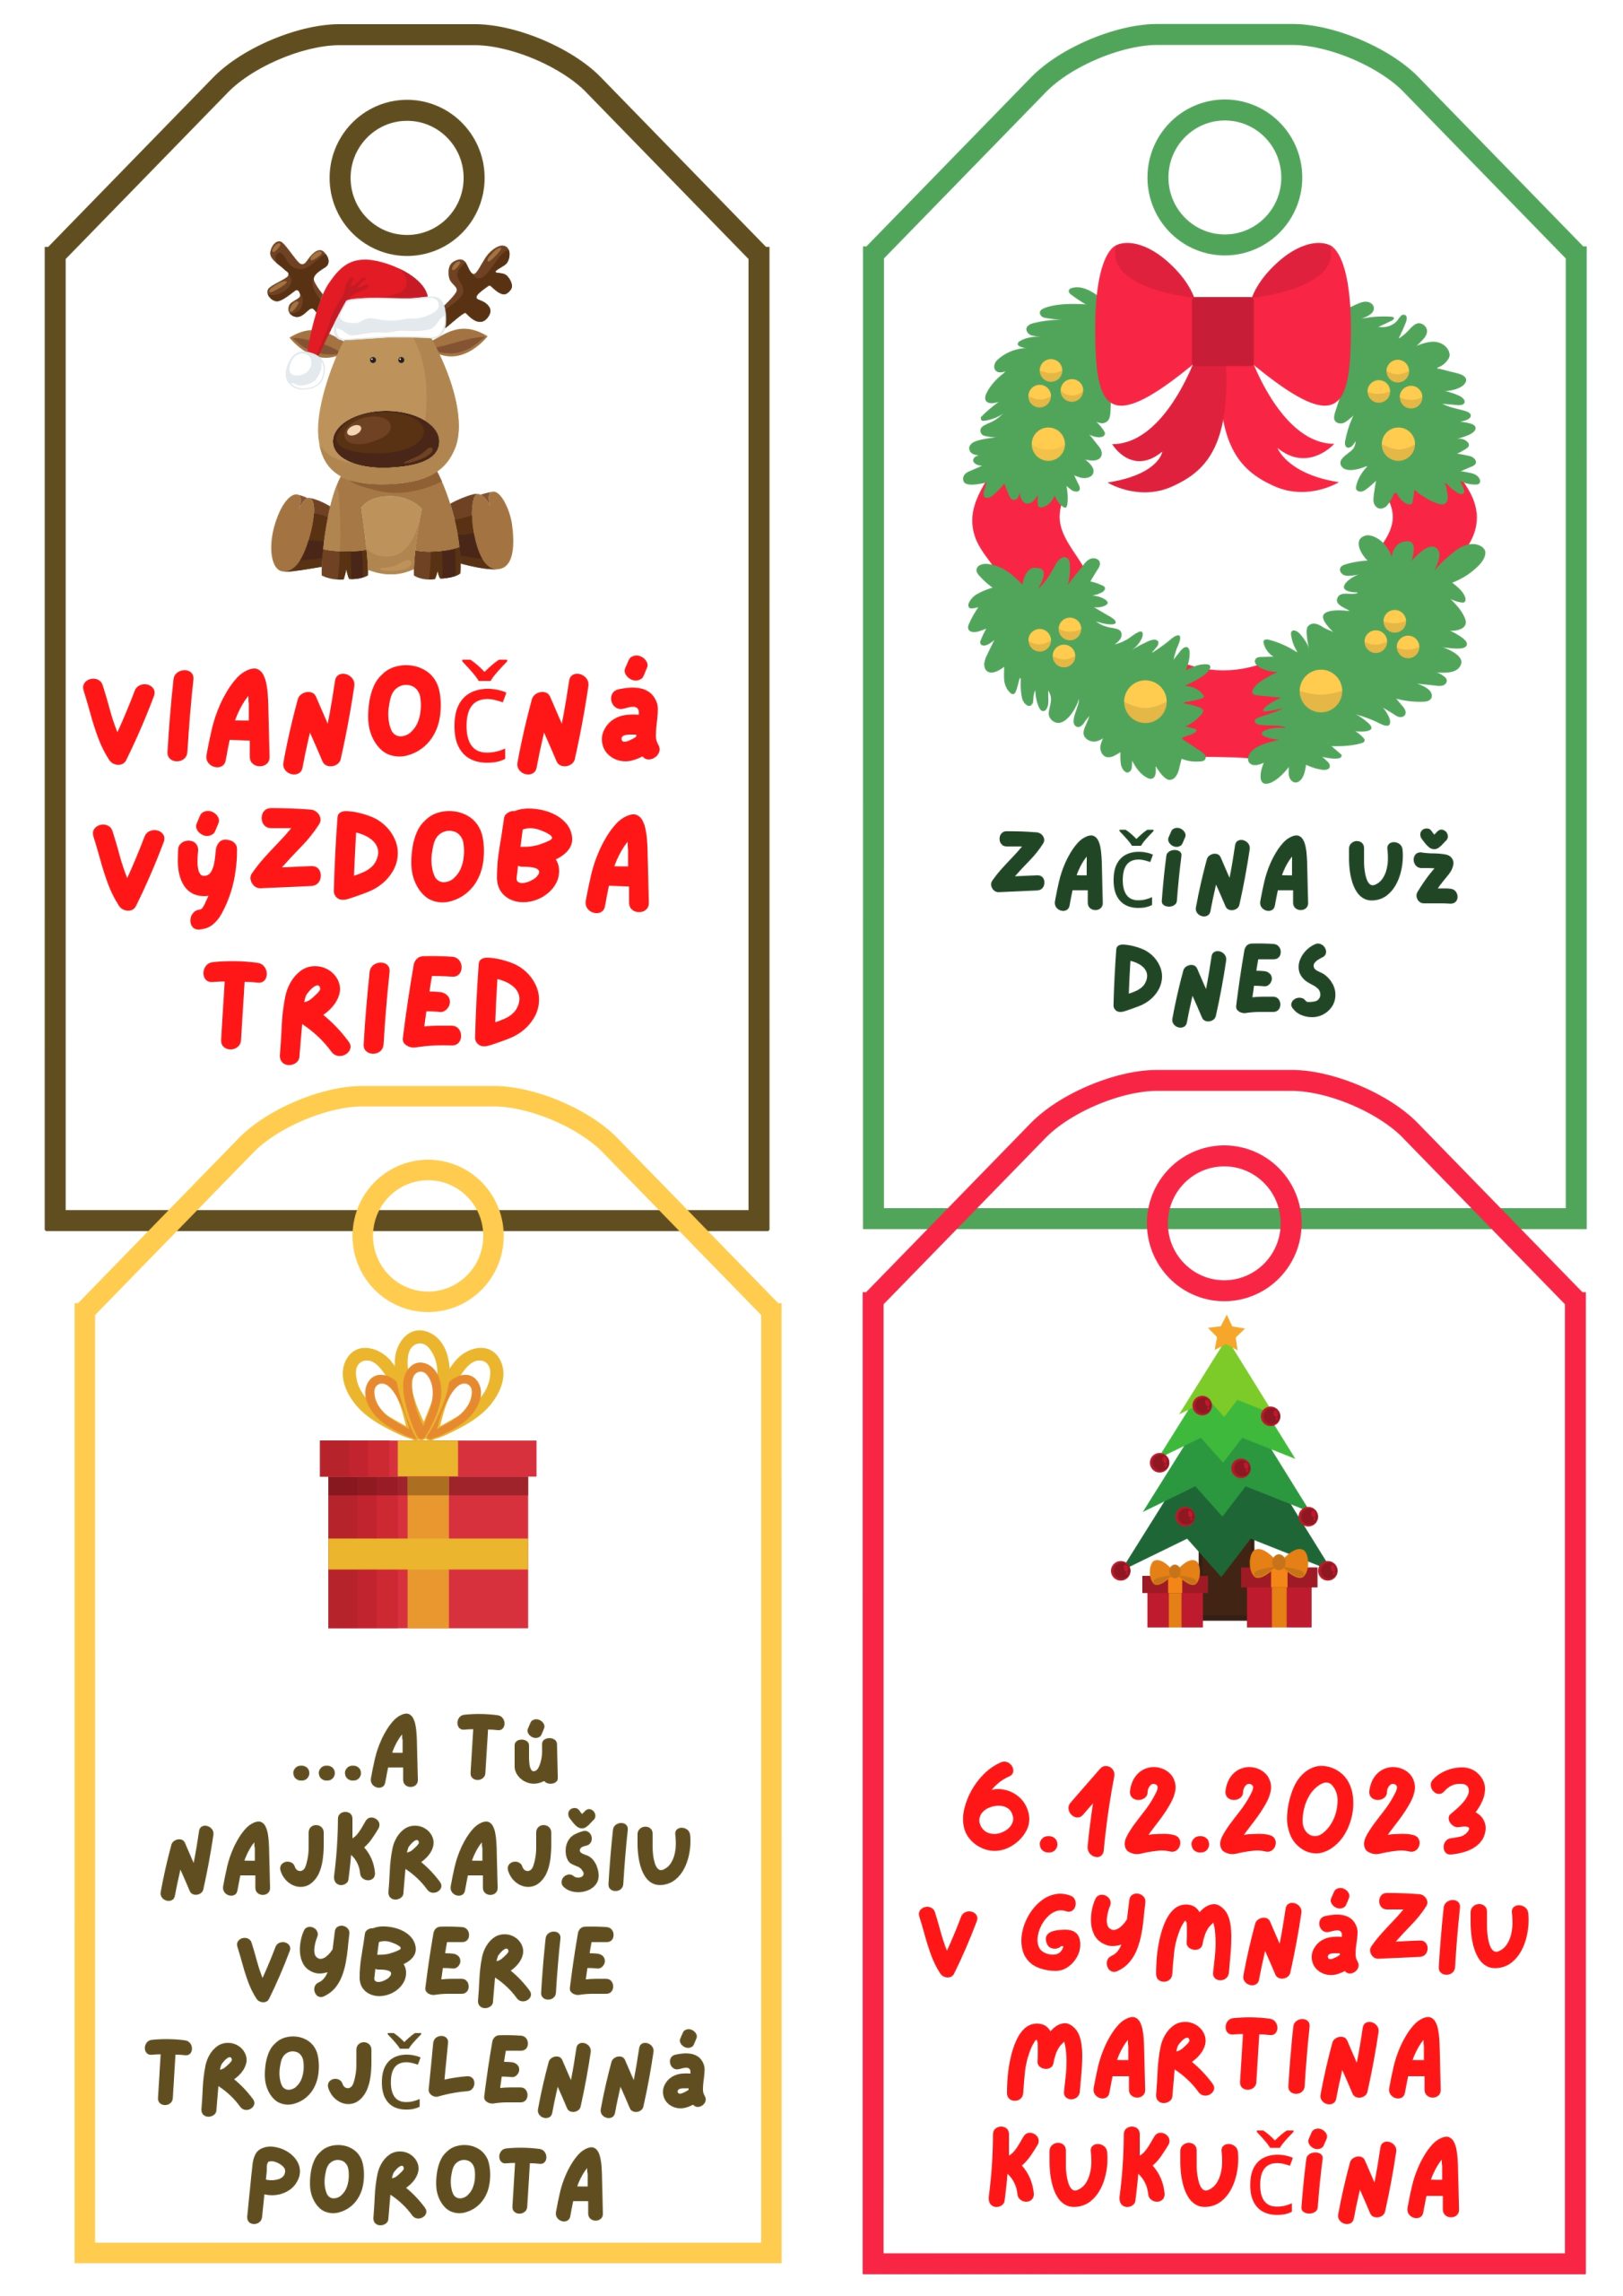 Featured image for “Vianočná výzdoba tried”